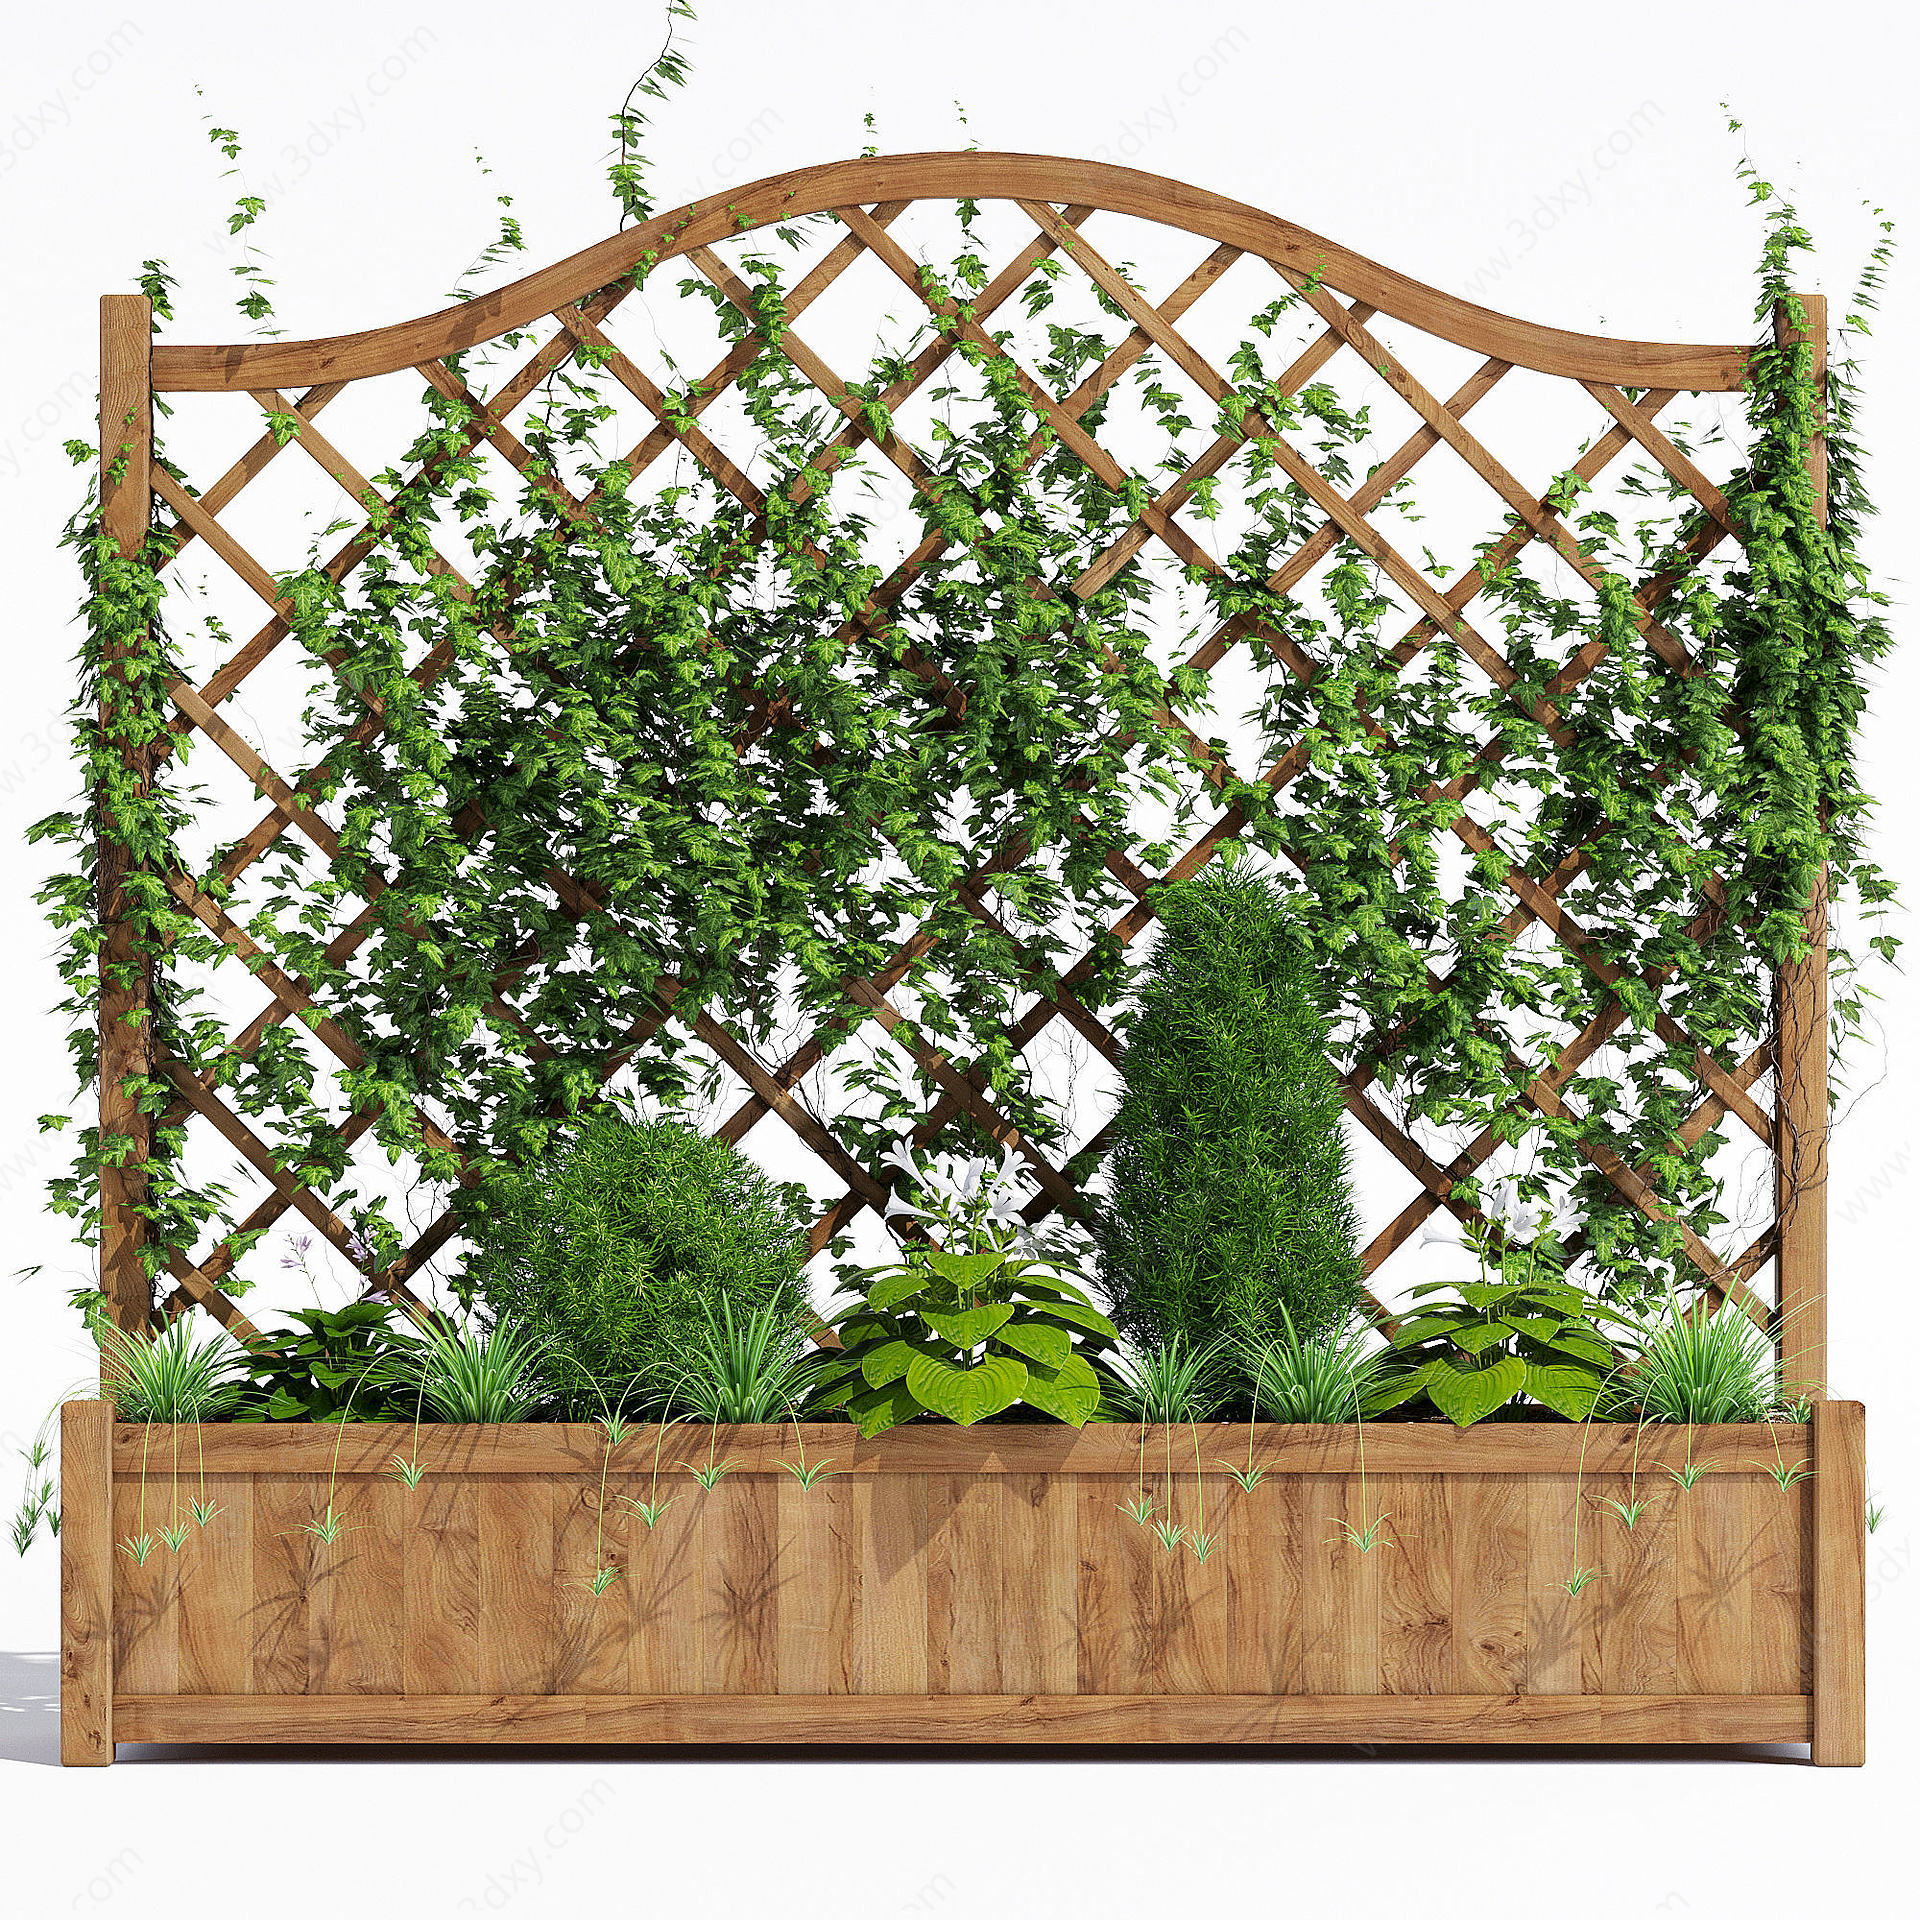 廊架花架园林植物3D模型